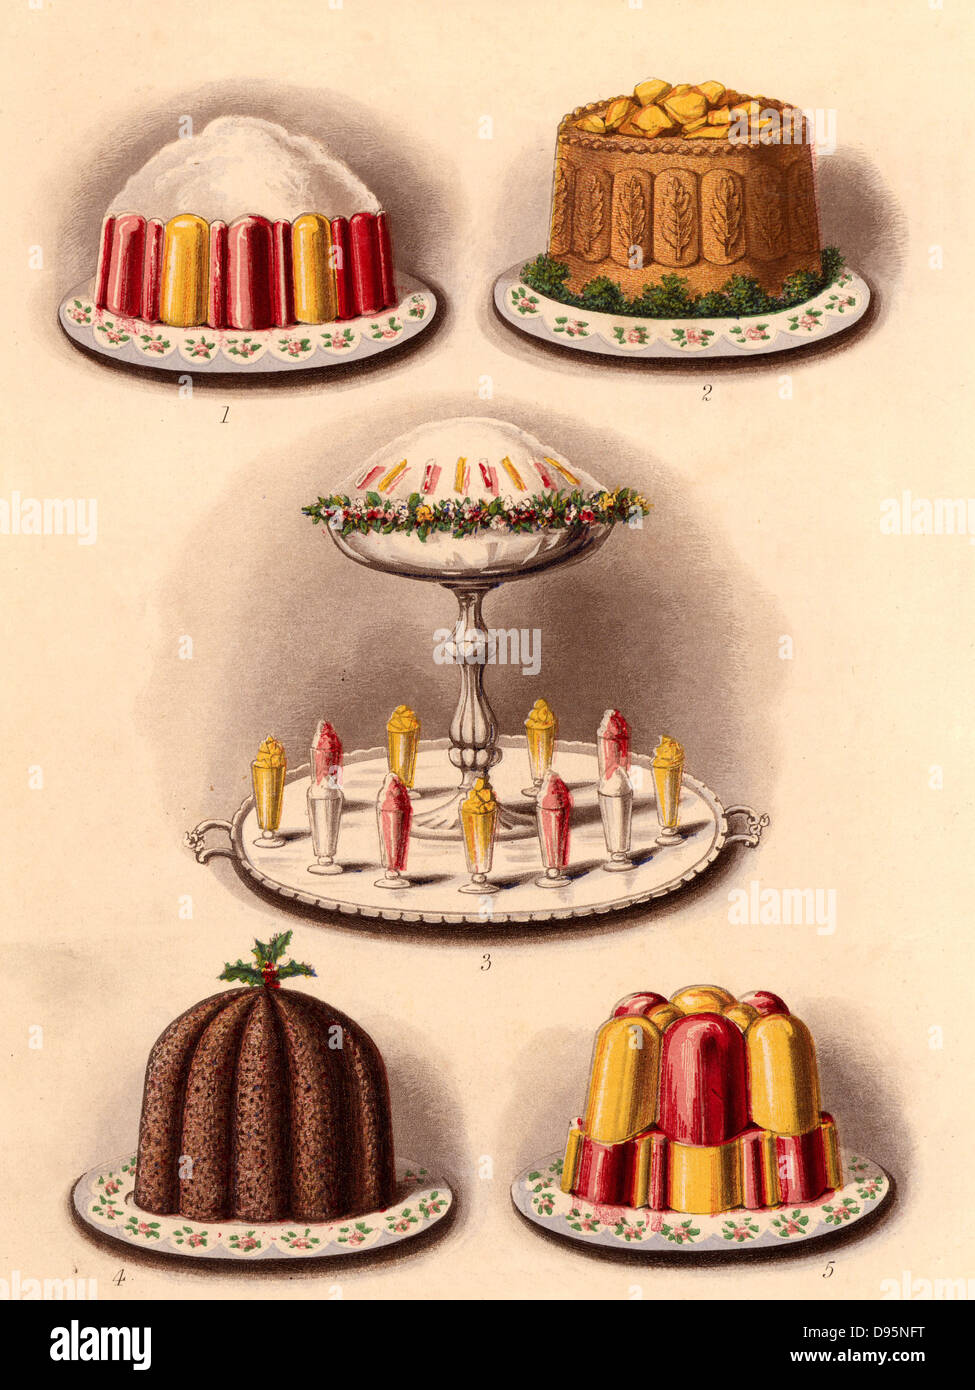 Puddings und einer Torte. Top; Marmelade und Sahne, und Yorkshire pie mit aspik Gelee. Unten; Christmas Pudding, und Gelee. In der Mitte ist eine triflle vom ICES und Gelees umgeben. Von "Chromolithograph Cassell Buch des Haushalts" (London, 1895). Stockfoto